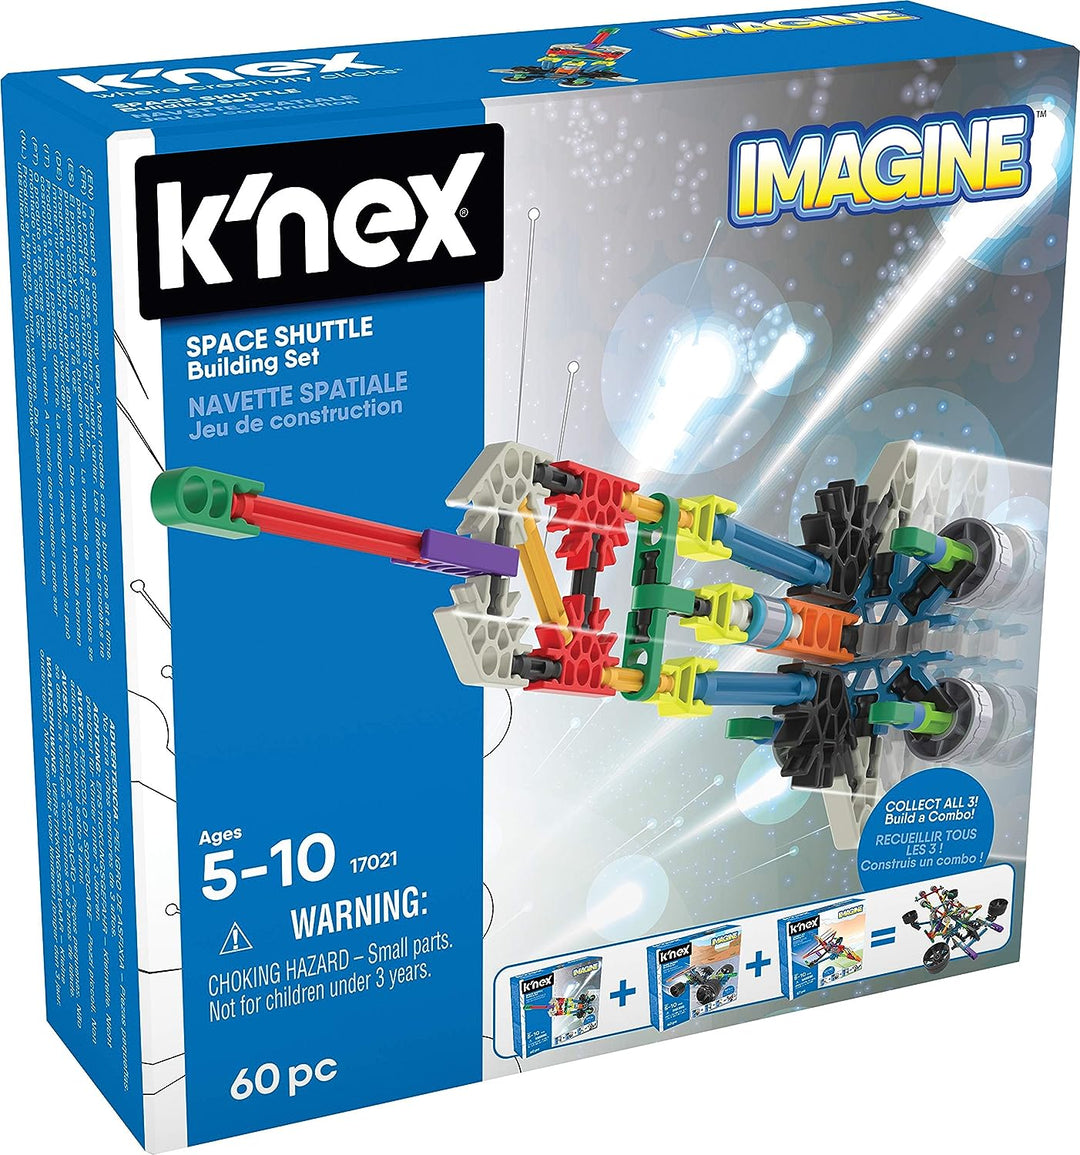 K'Nex KNex 520 17020 Imagine Spielzeugset Space Shuttle Construction – 60 Teile – Alter 5–10 EA Einführungsfahrzeug sortiert, mehrfarbig